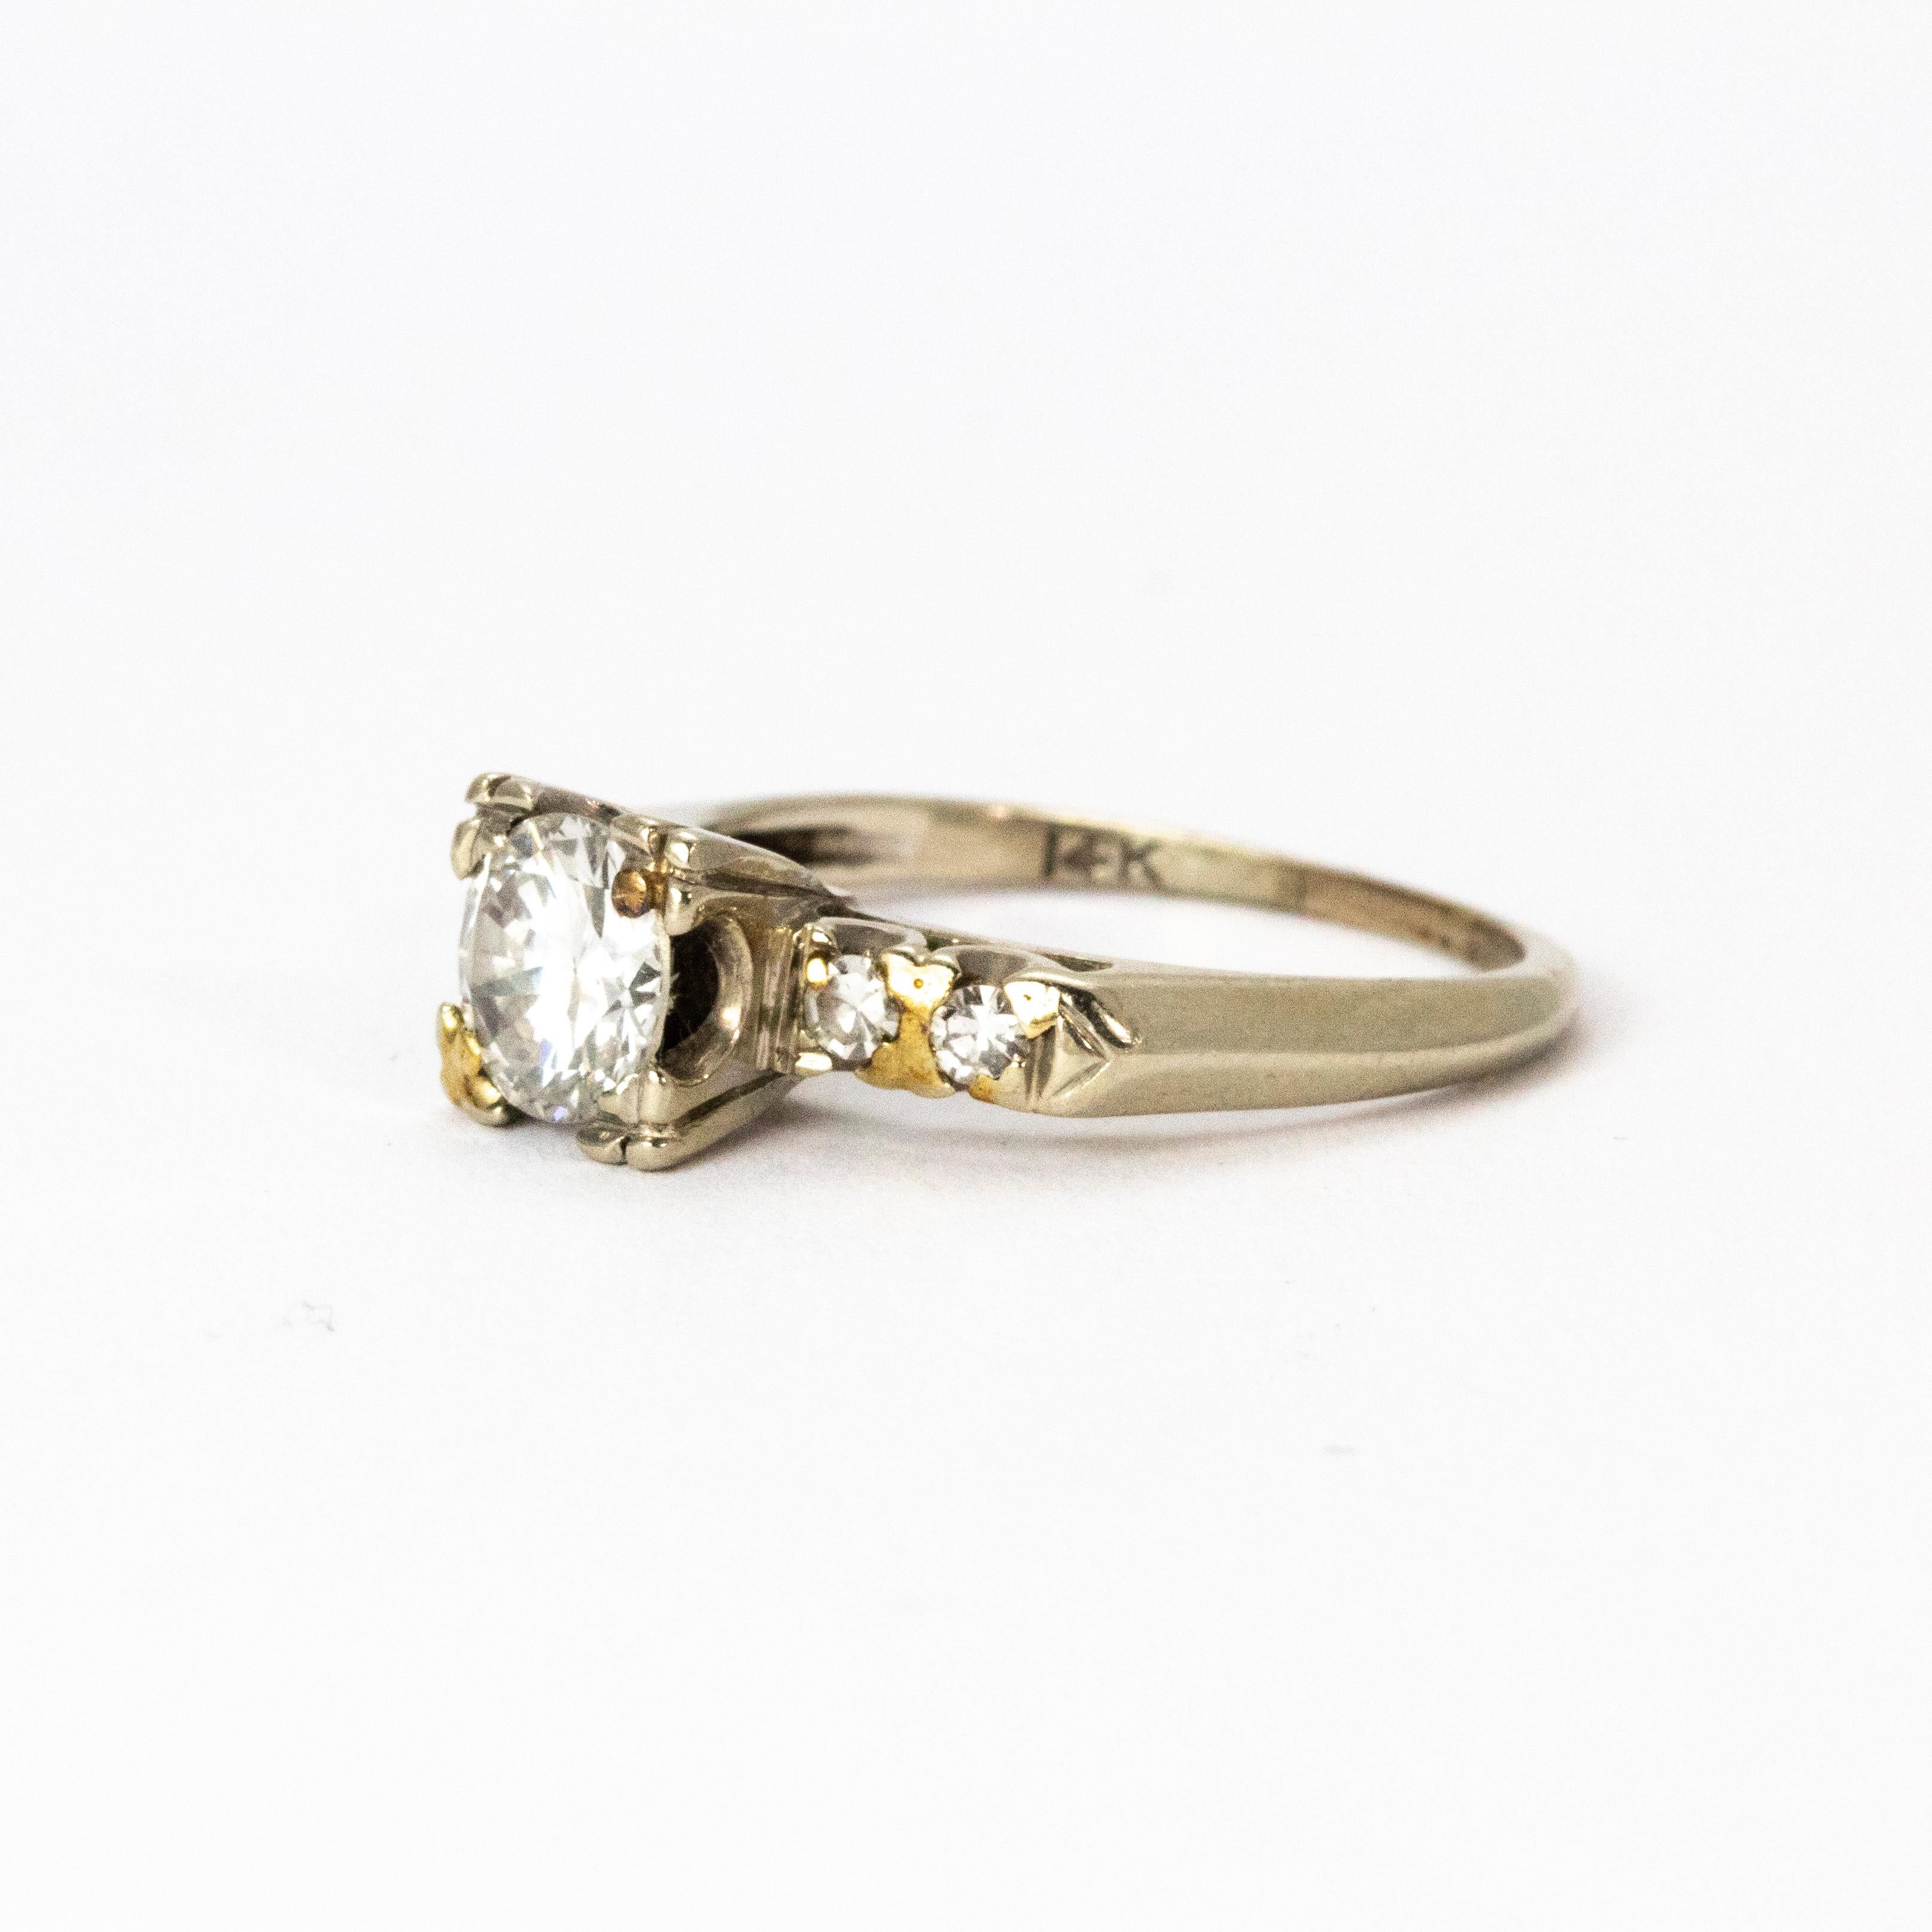 Ein atemberaubender Diamant-Solitärring aus der Edwardianischen Ära um 1901. Der schöne zentrale alte europäische Schliff Diamant misst 80 Punkte, H Farbe und VS2 Klarheit. Die Schultern sind jeweils mit einem Paar Diamanten besetzt, die in 14 Karat